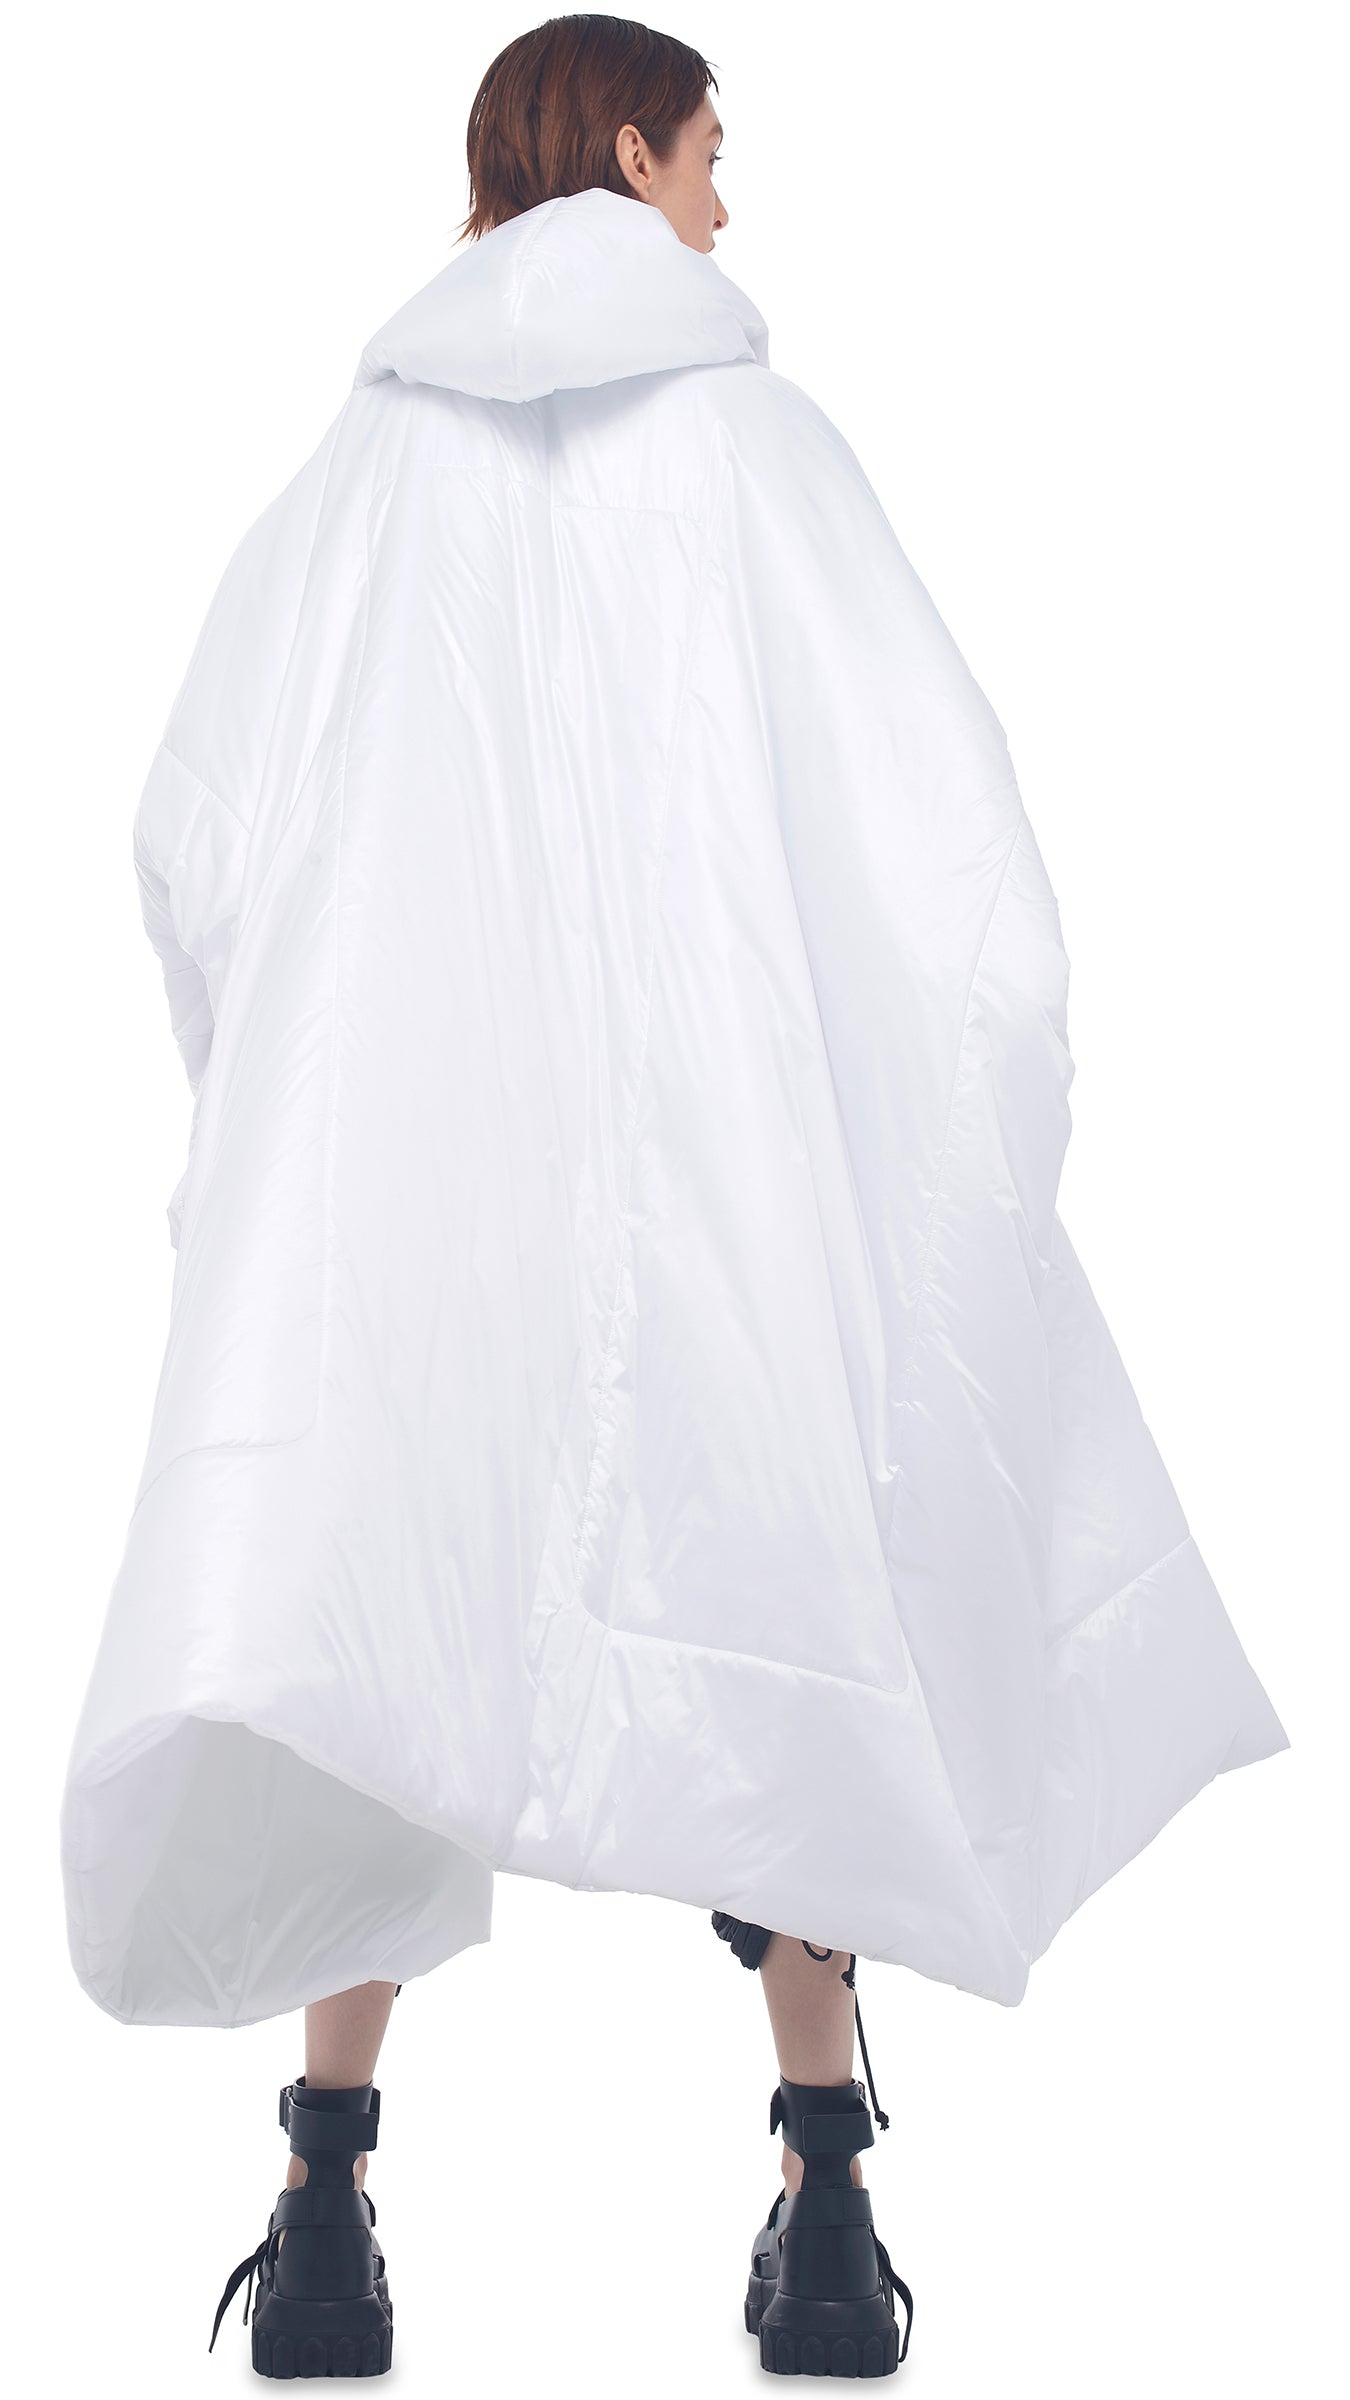 Norma Kamali Hooded Sleeping Bag Coat - Sand / Size Xs/S